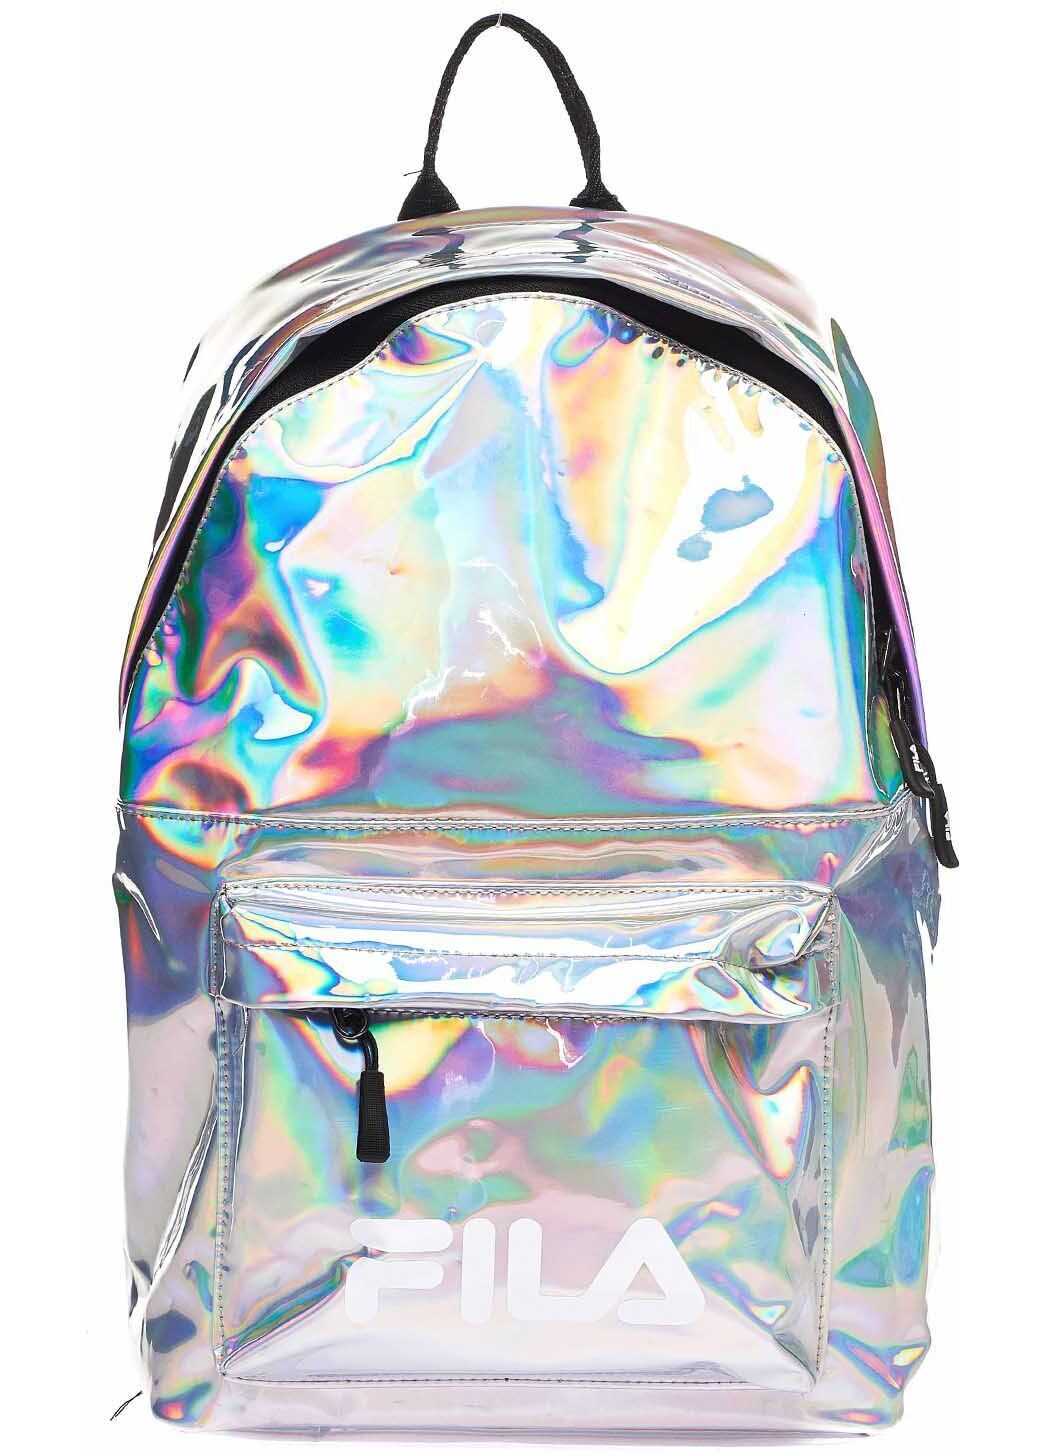 Fila Backpack 